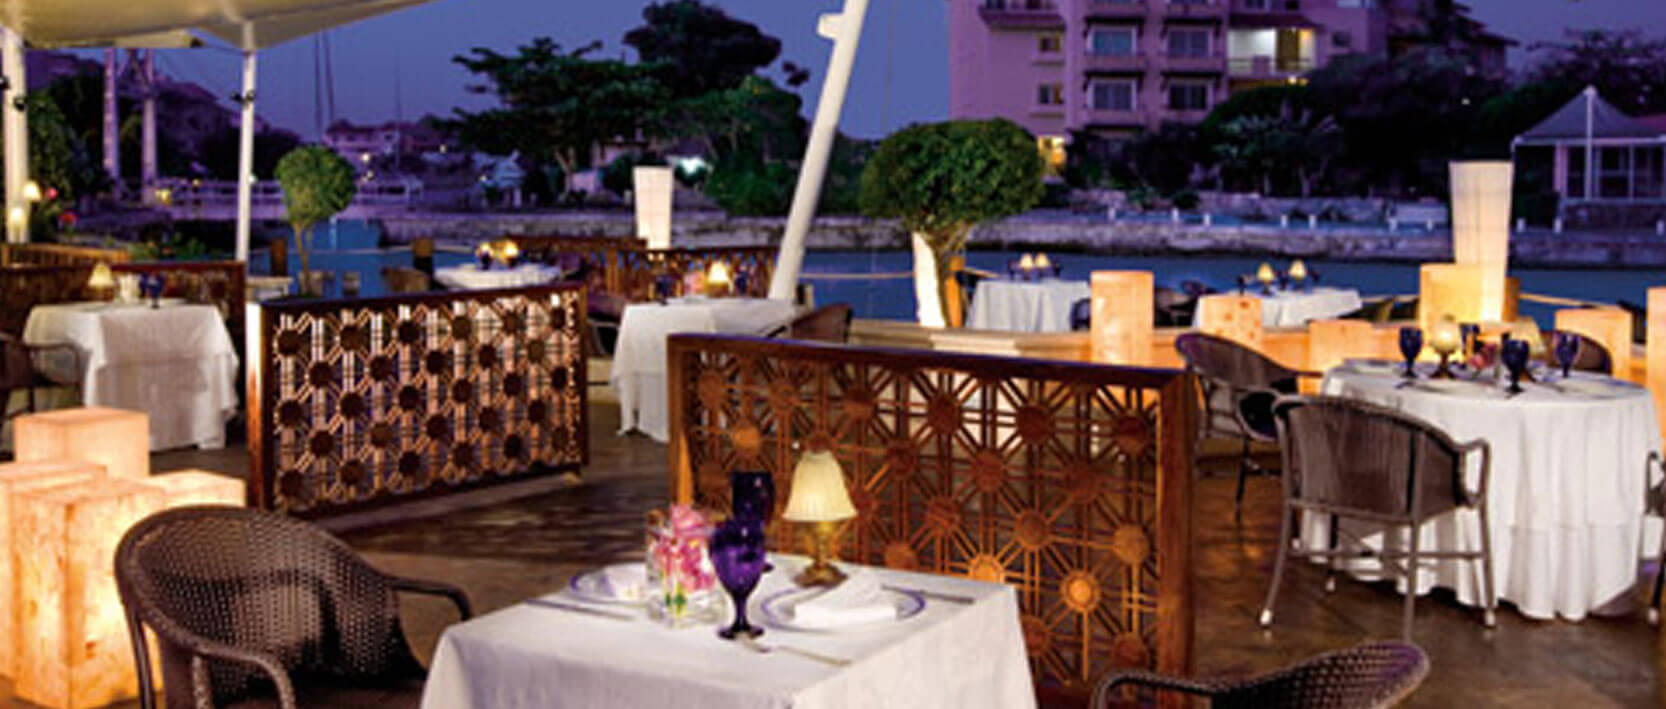 Dreams Puerto Aventuras Resort Restaurants and Bars - Oceana